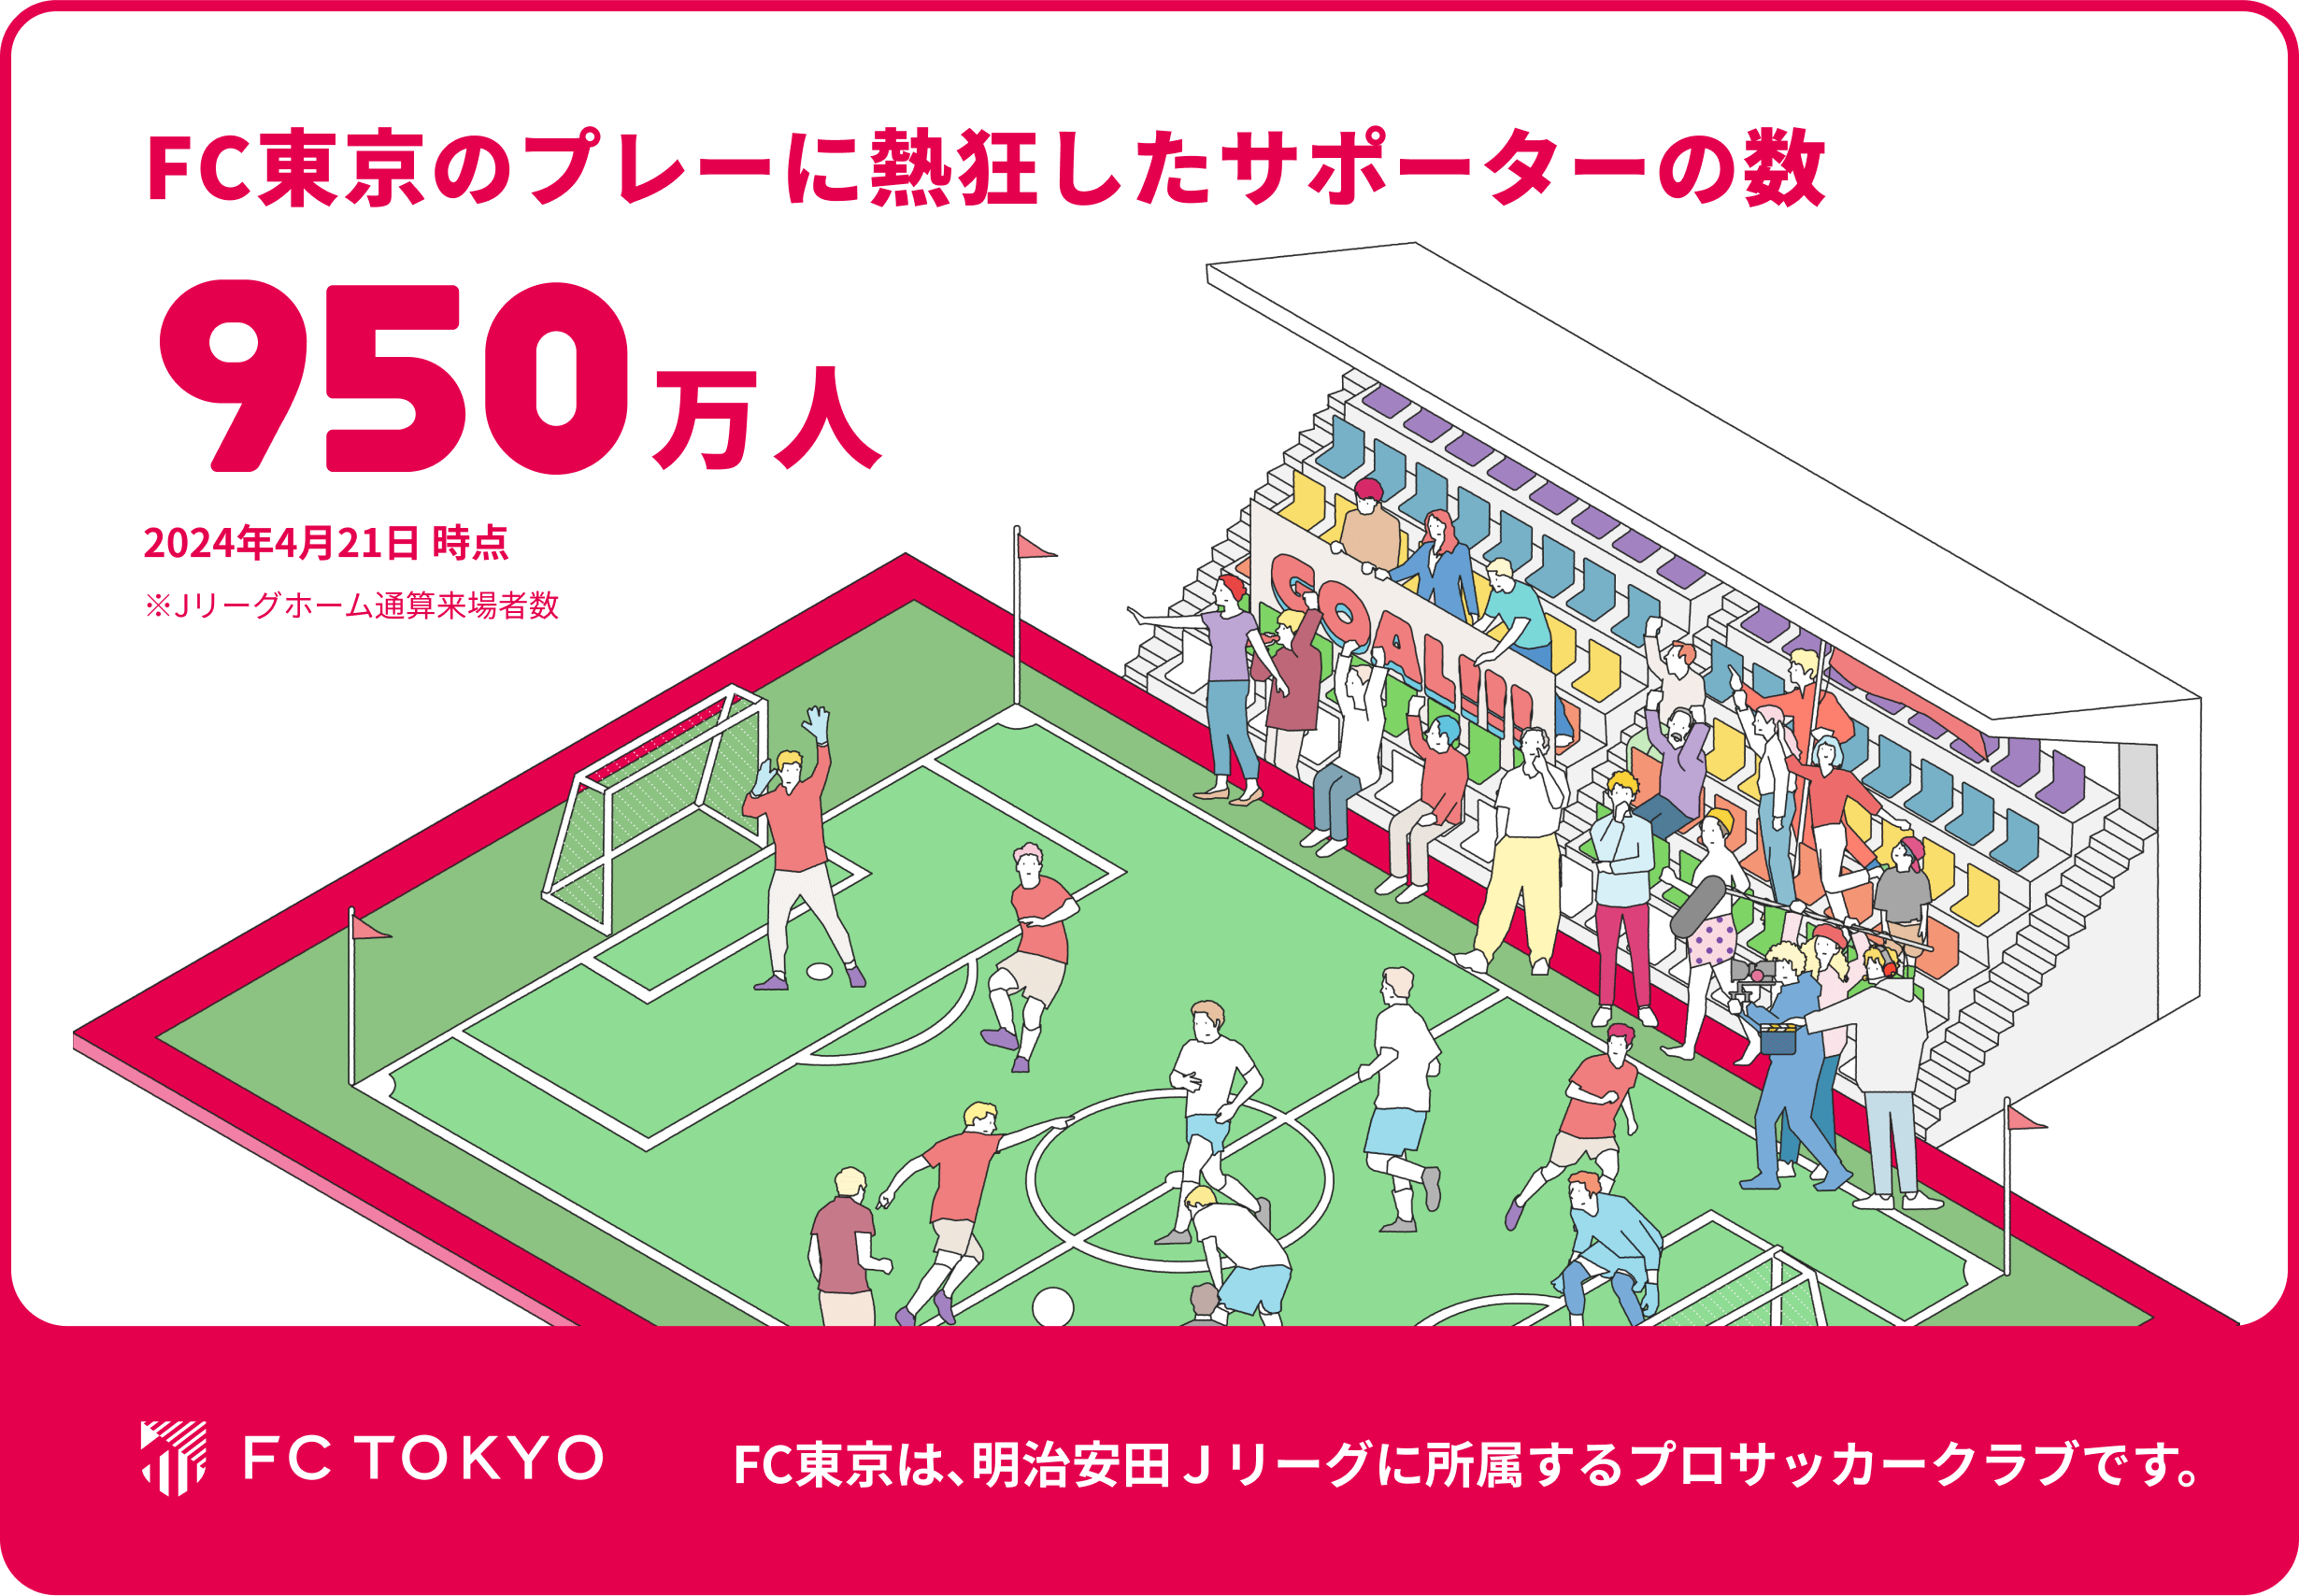 FC東京のプレーに熱狂したサポーターの数 950万人 2024年4月21日 時点 ※Jリーグホーム通算来場者数 FC東京は、明治安田Ｊリーグに所属するプロサッカークラブです。